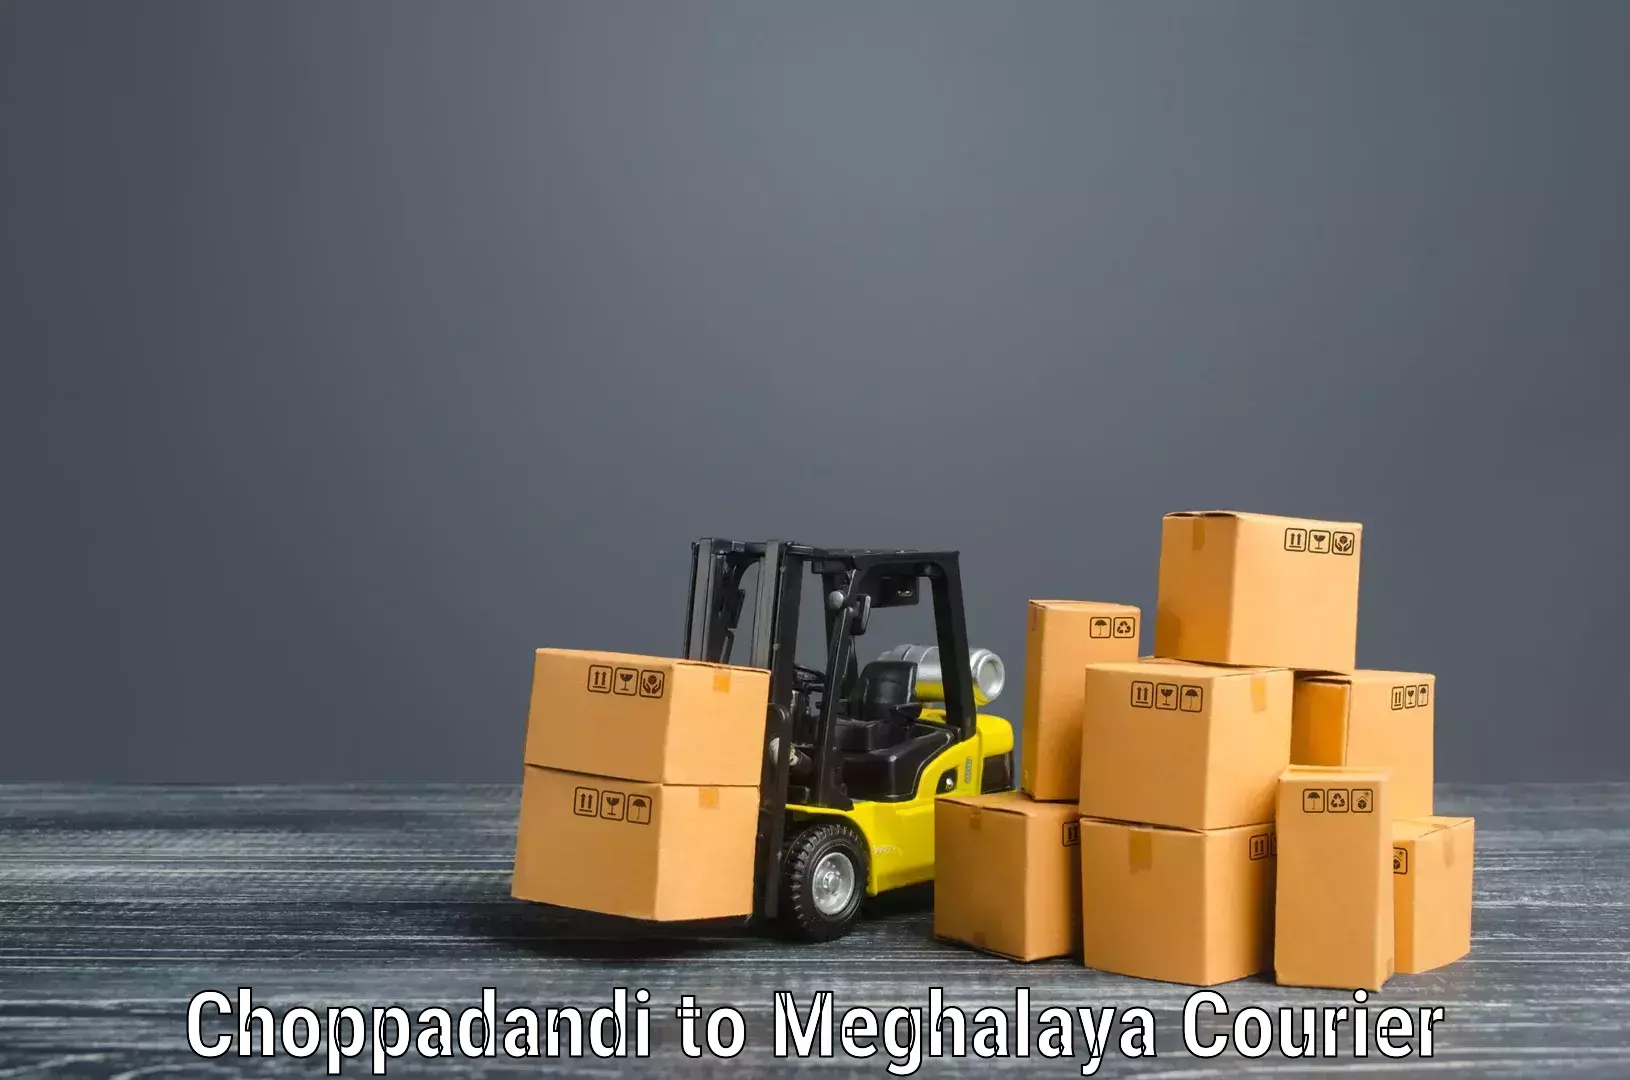 Household moving experts Choppadandi to Cherrapunji